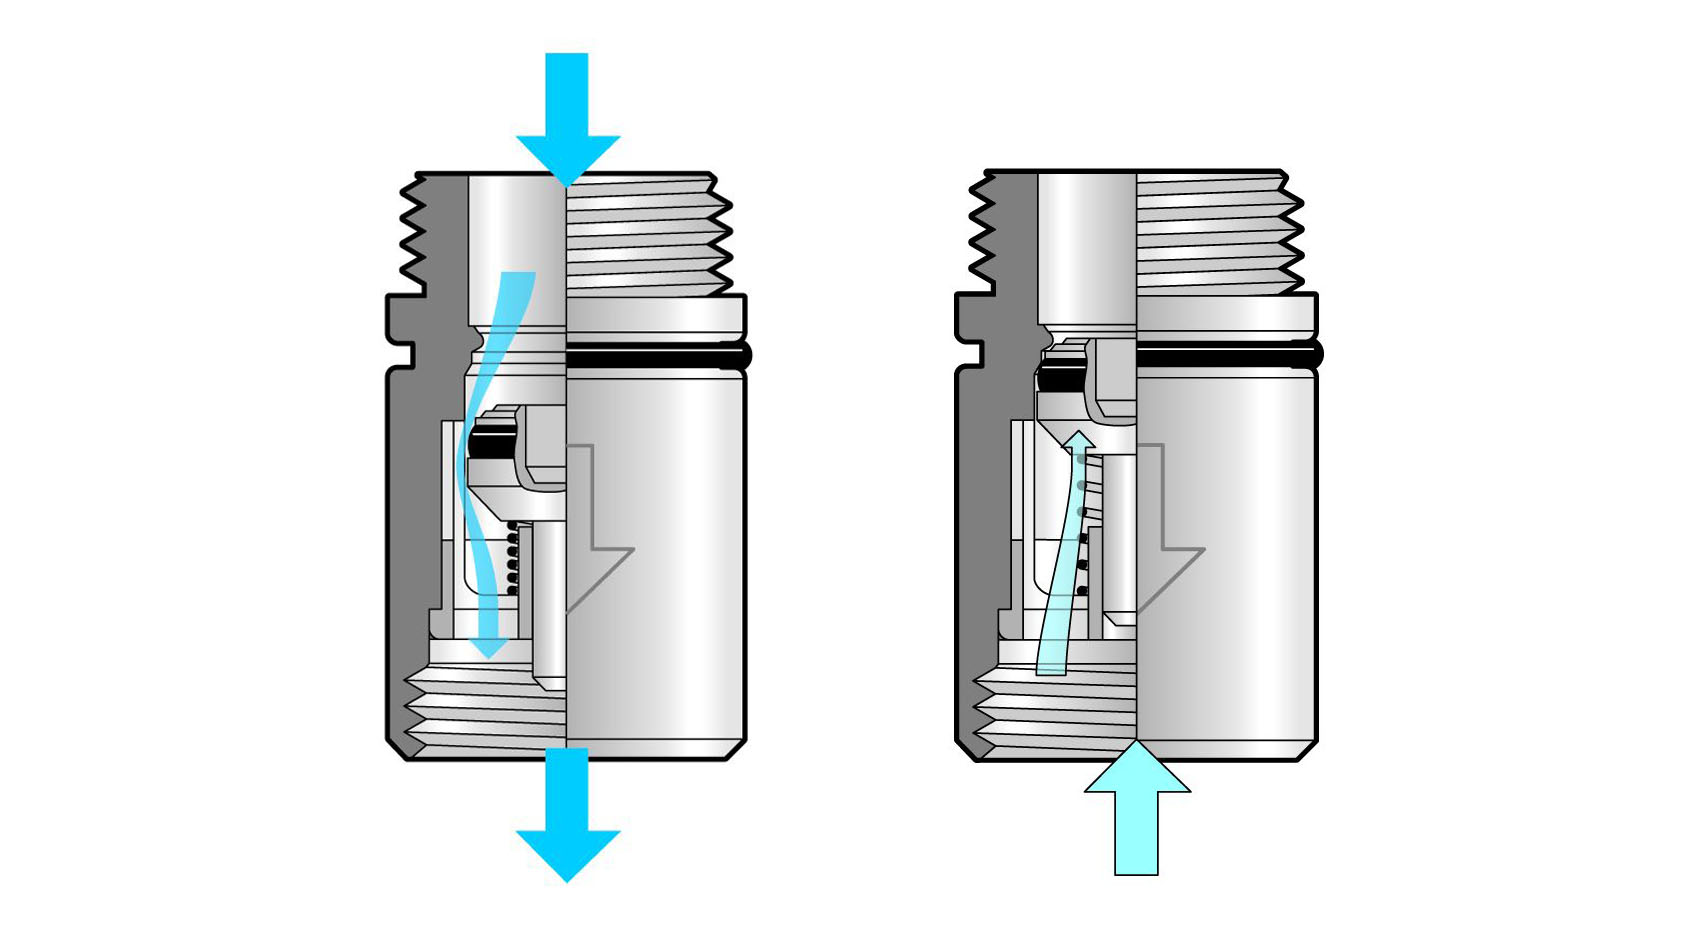 Spätná klapka (EB) 
Funkcia: v smere toku vody otvára prúd sedlo ventilu, osadené pružinkou. Ak by tiekla voda v protismere, zostane ventil zatvorený. Pri montáži je dôležité vždy mať na zreteli smer toku. 